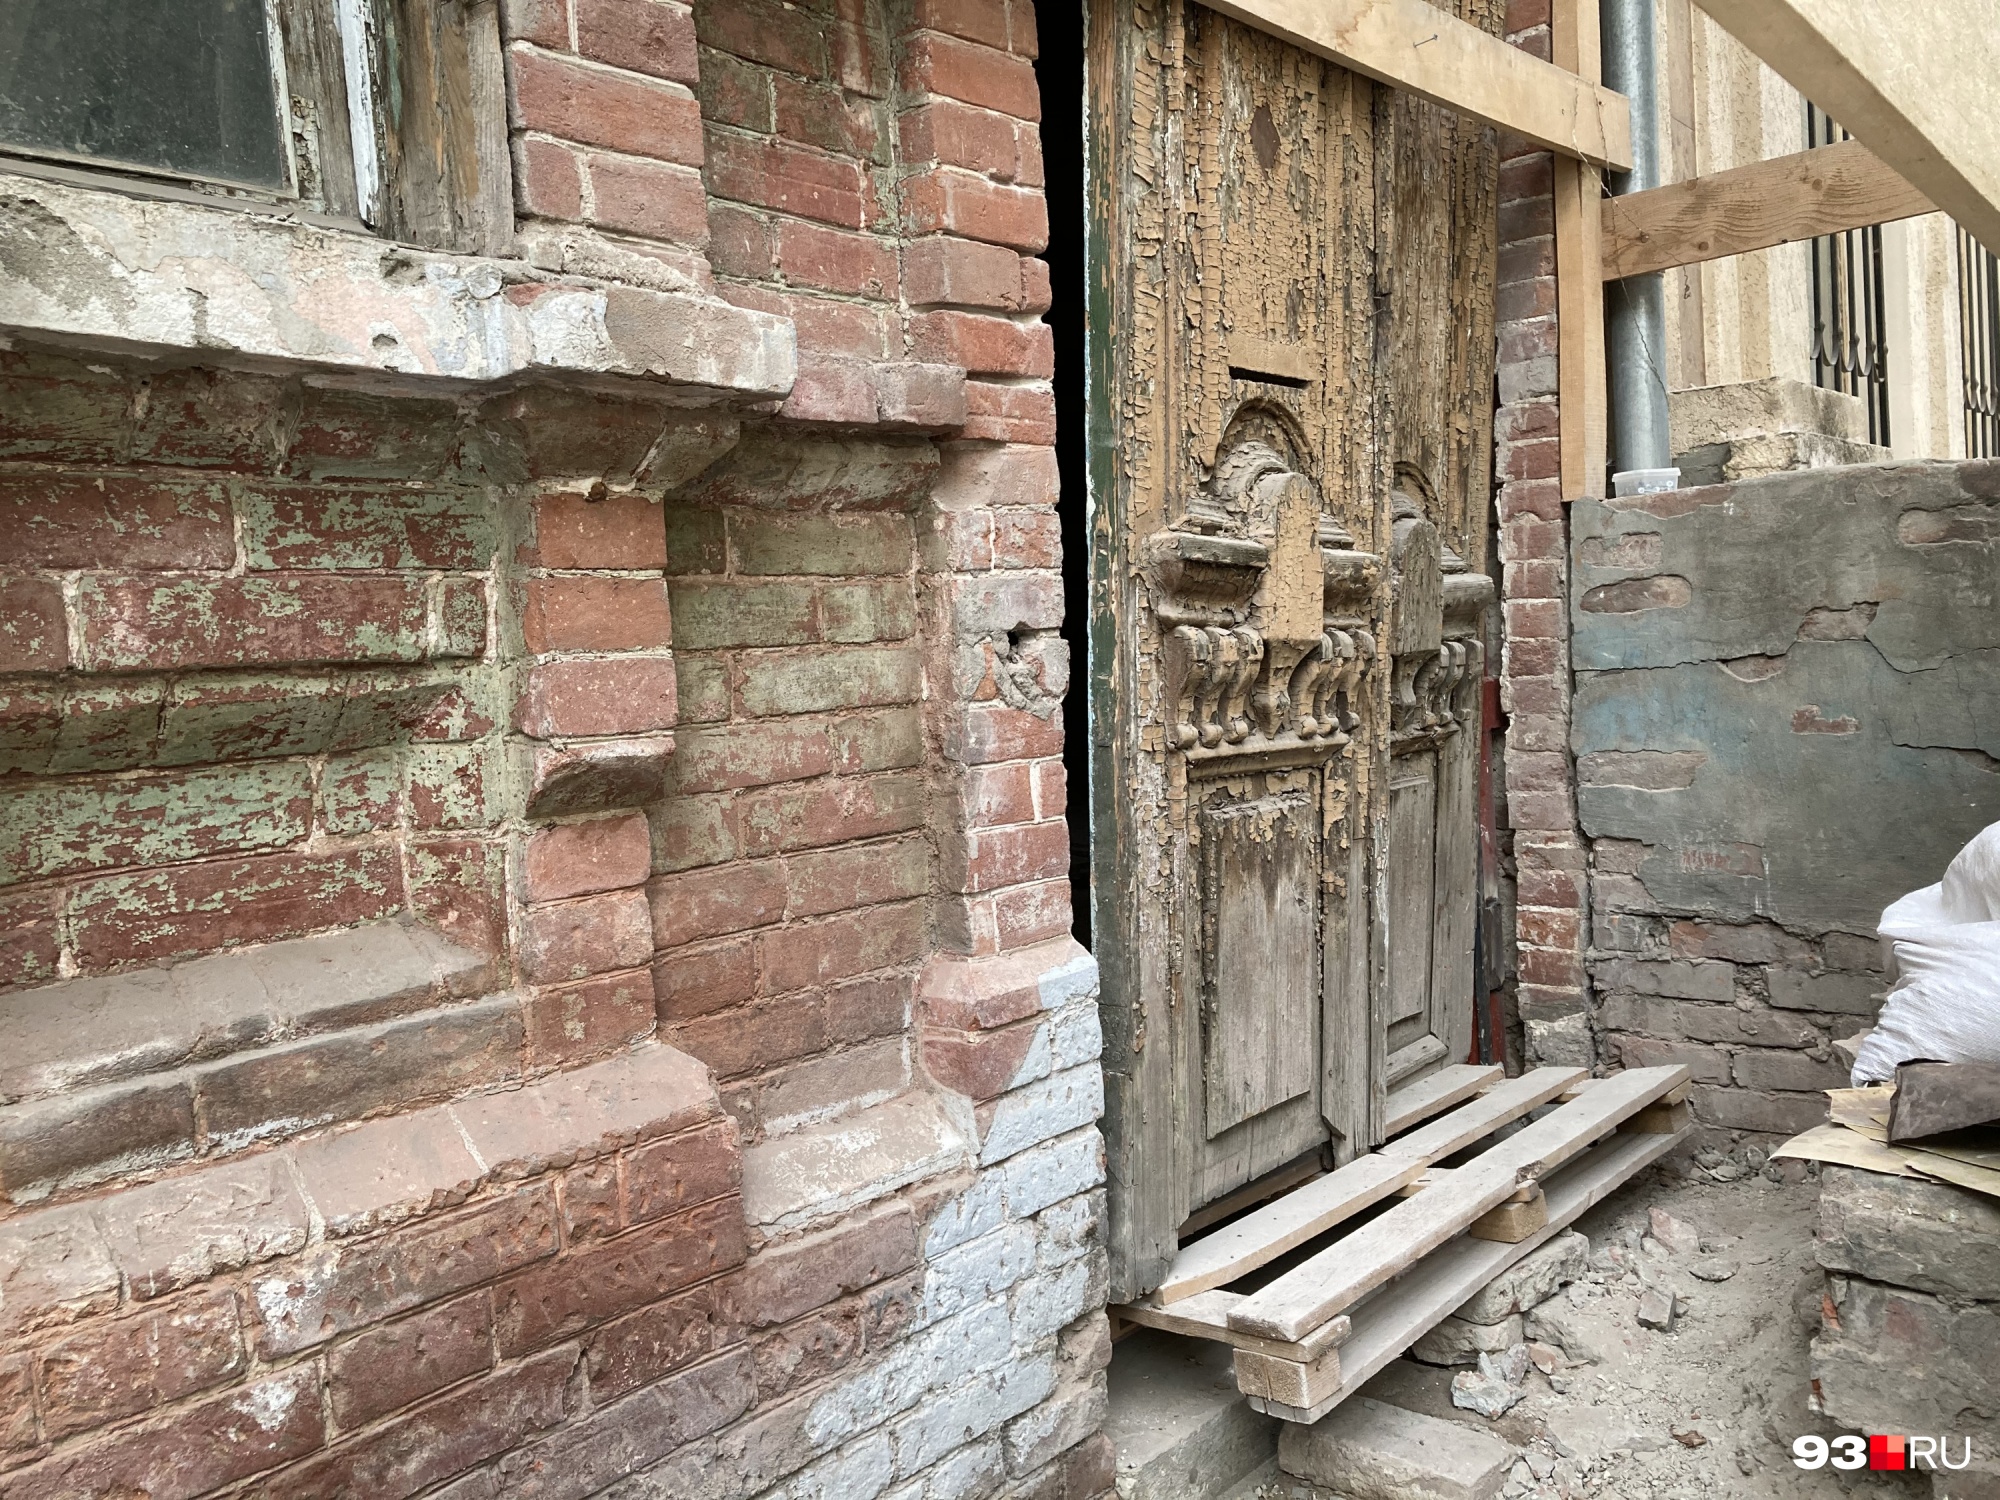 Дверь на улице Карасунской — одна из следующих целей краснодарских волонтеров 